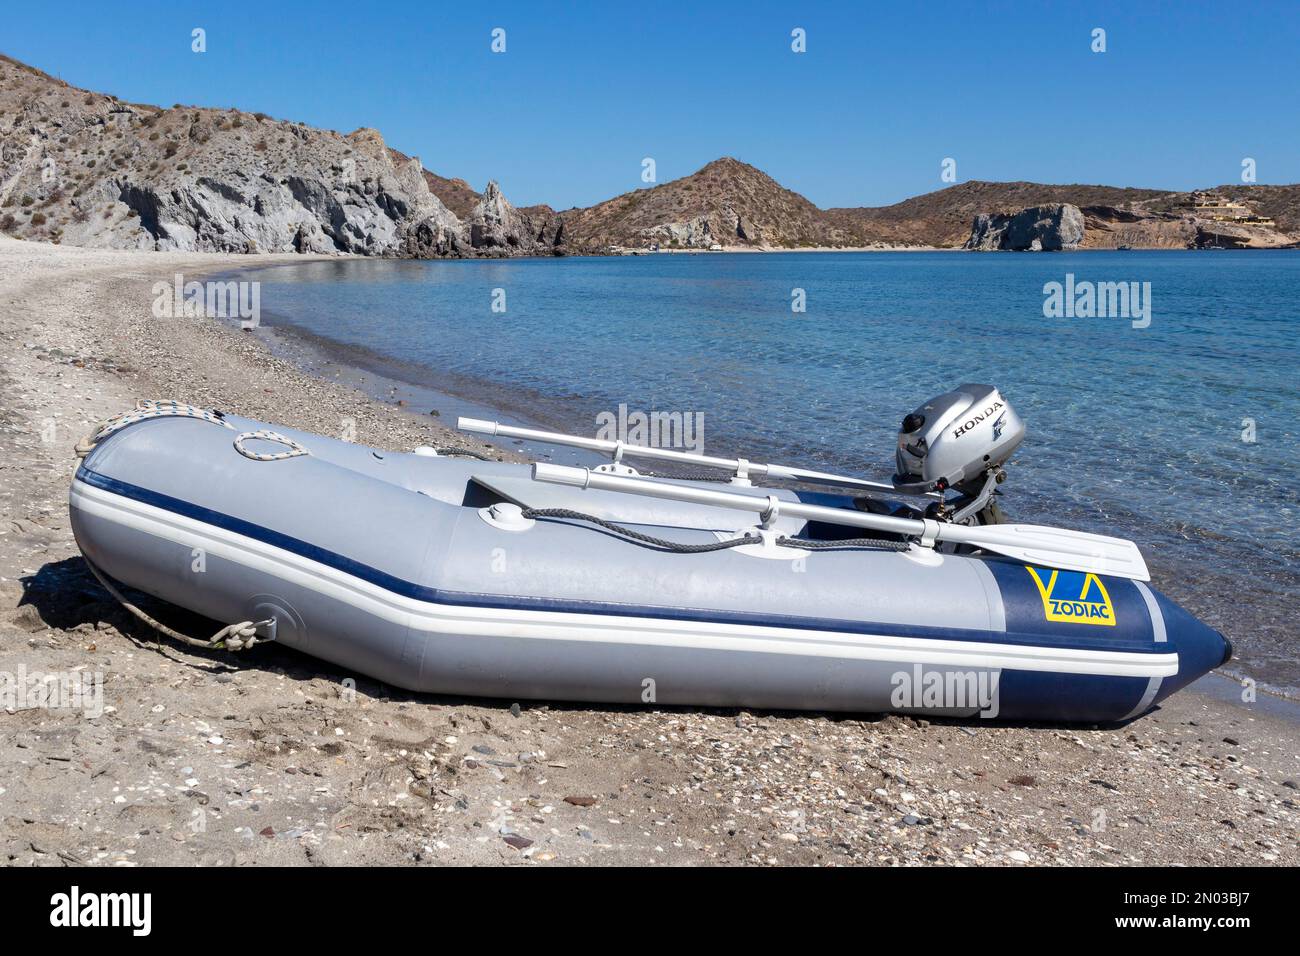 Zodiac dinghy inflable (un barco tender) con motor fuera de borda Honda en  la playa en el Mar de Cortés, Baja California, México Fotografía de stock -  Alamy